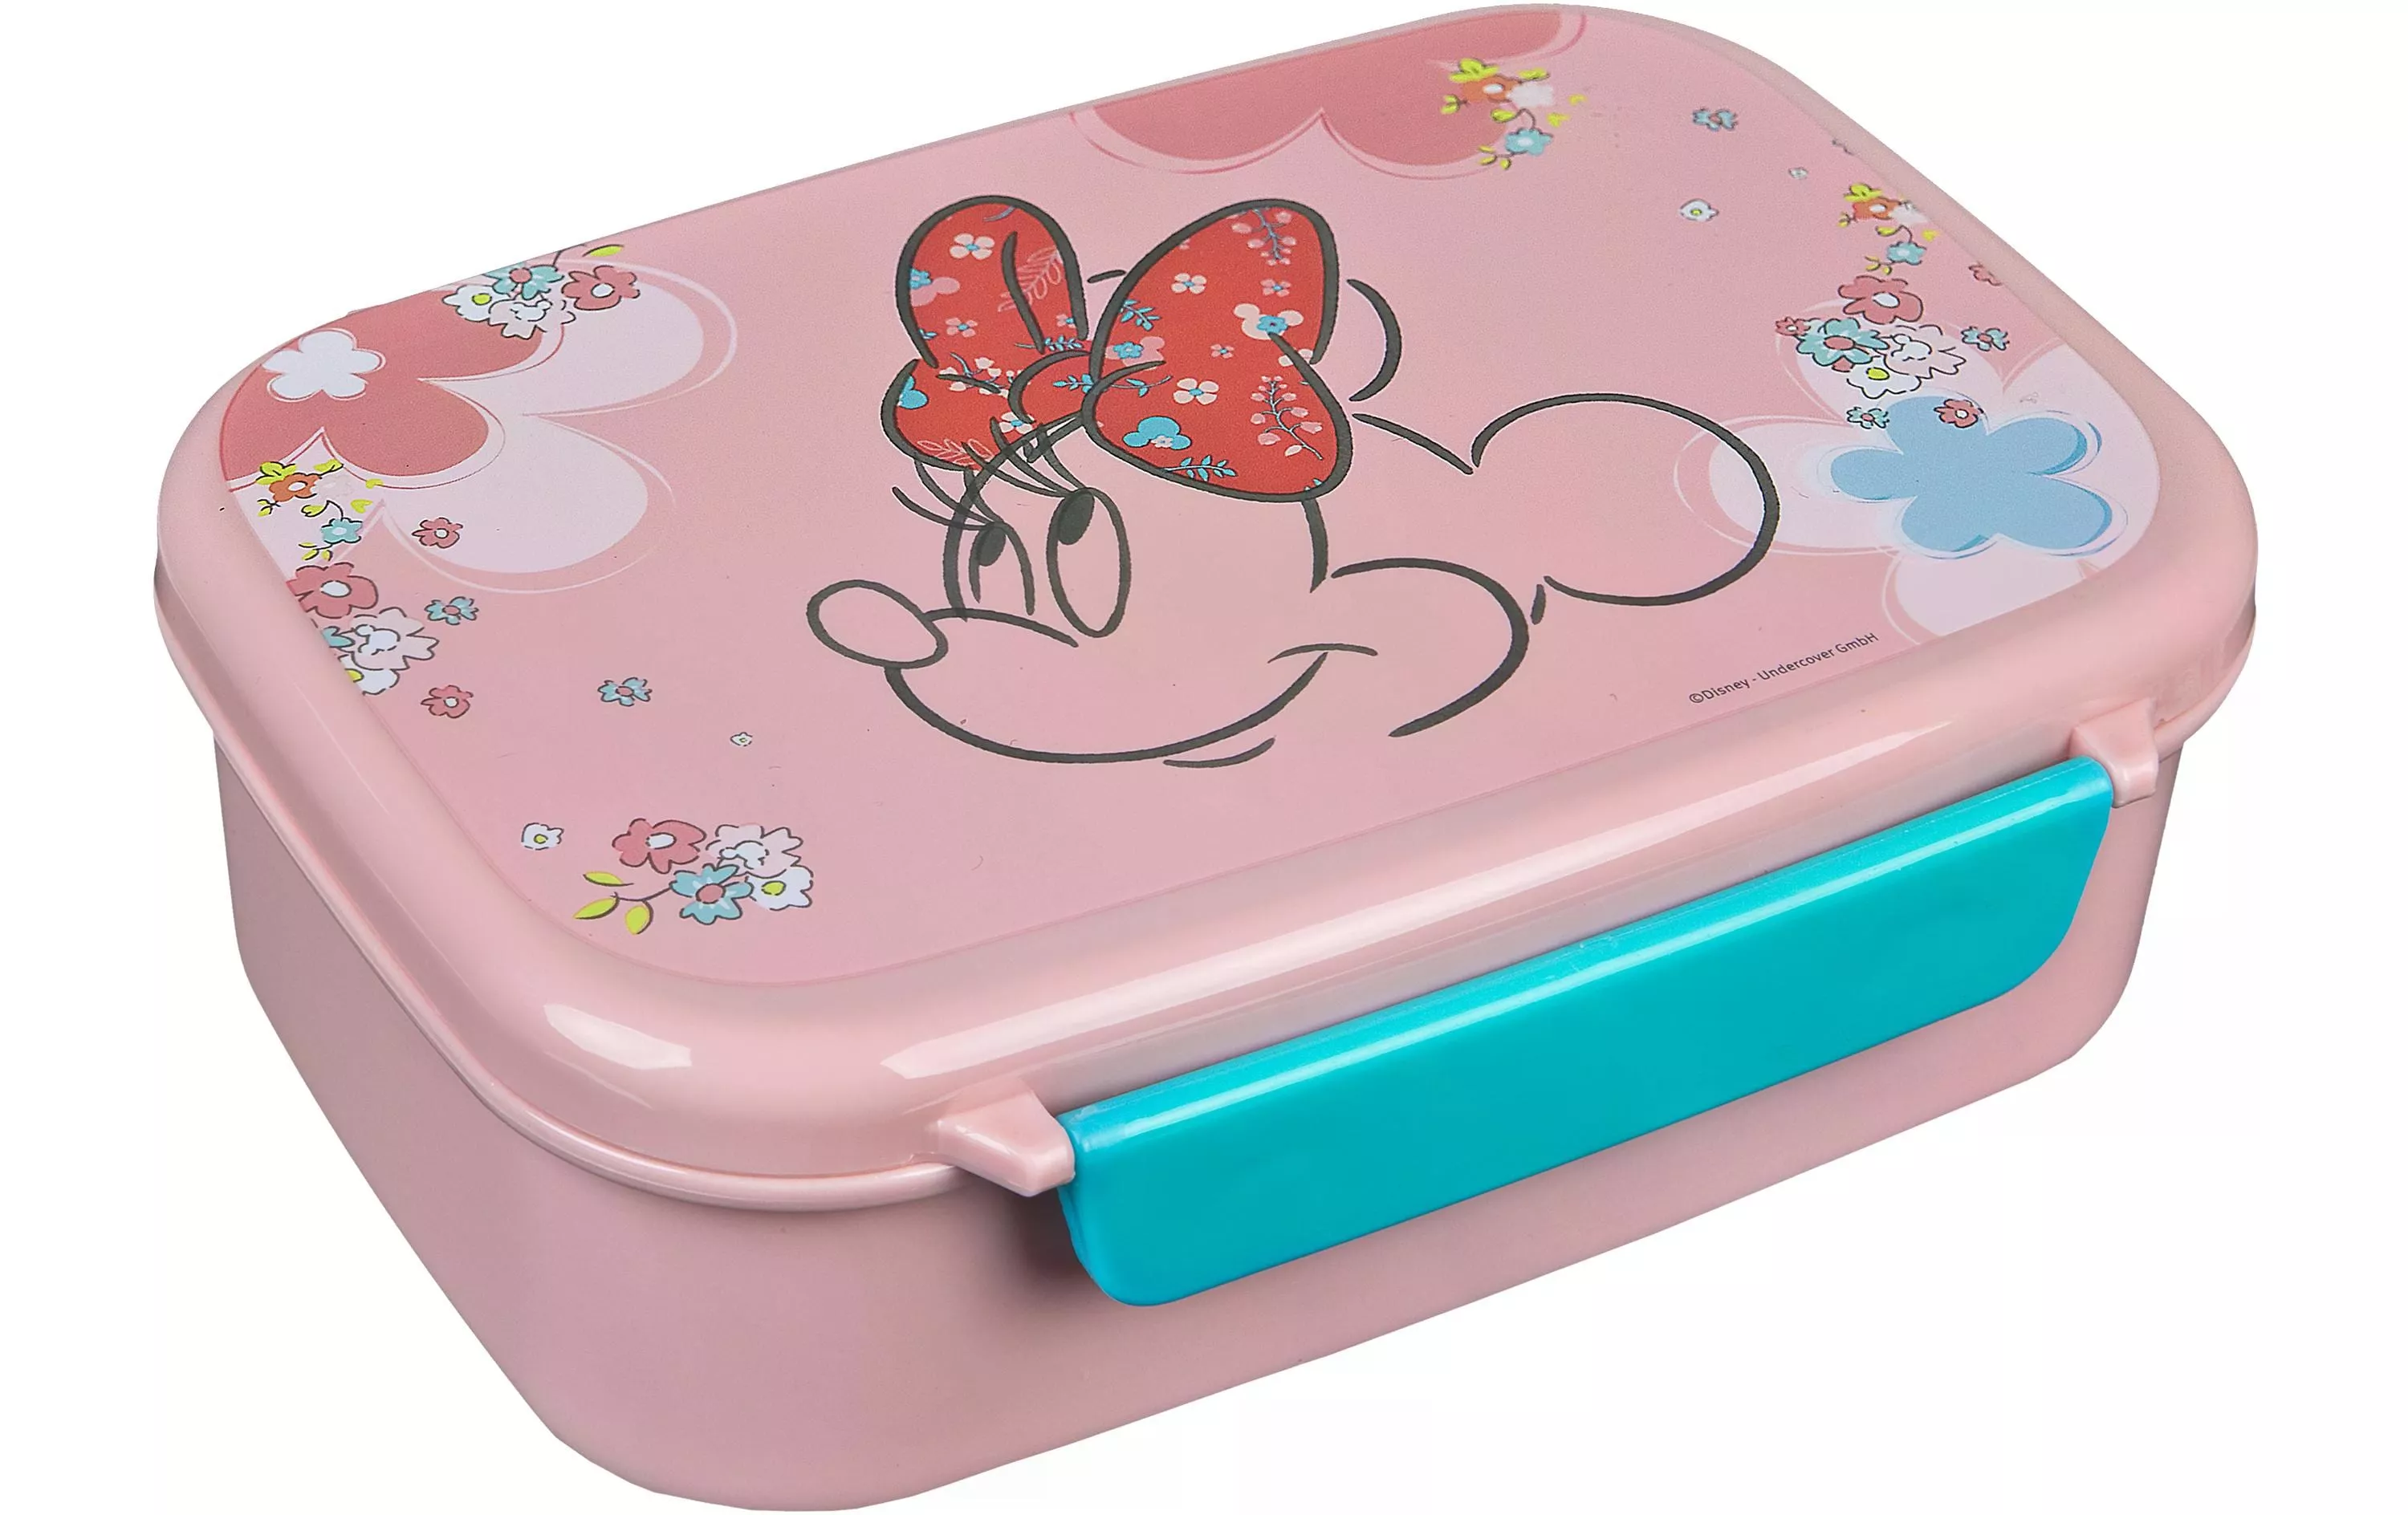 Boîte casse-croûte Disney Minnie Mouse Rose pâle